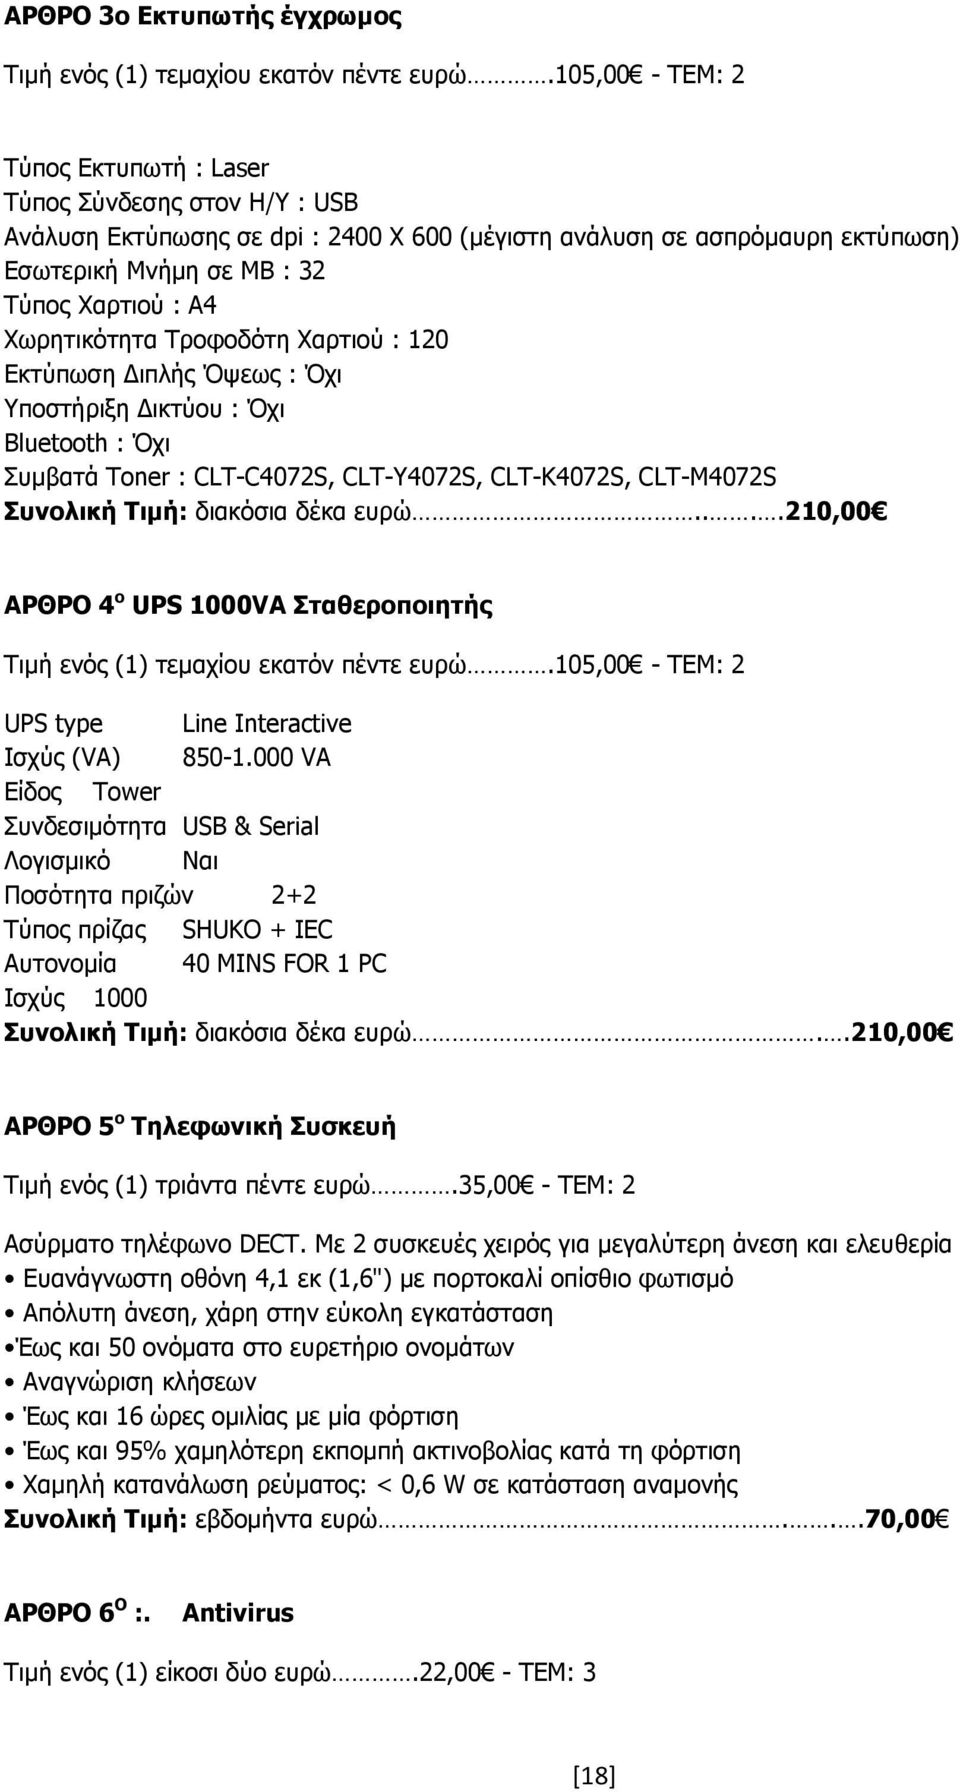 Χωρητικότητα Τροφοδότη Χαρτιού : 120 Εκτύπωση ιπλής Όψεως : Όχι Υποστήριξη ικτύου : Όχι Bluetooth : Όχι Συµβατά Toner : CLT-C4072S, CLT-Y4072S, CLT-K4072S, CLT-M4072S Συνολική Τιµή: διακόσια δέκα